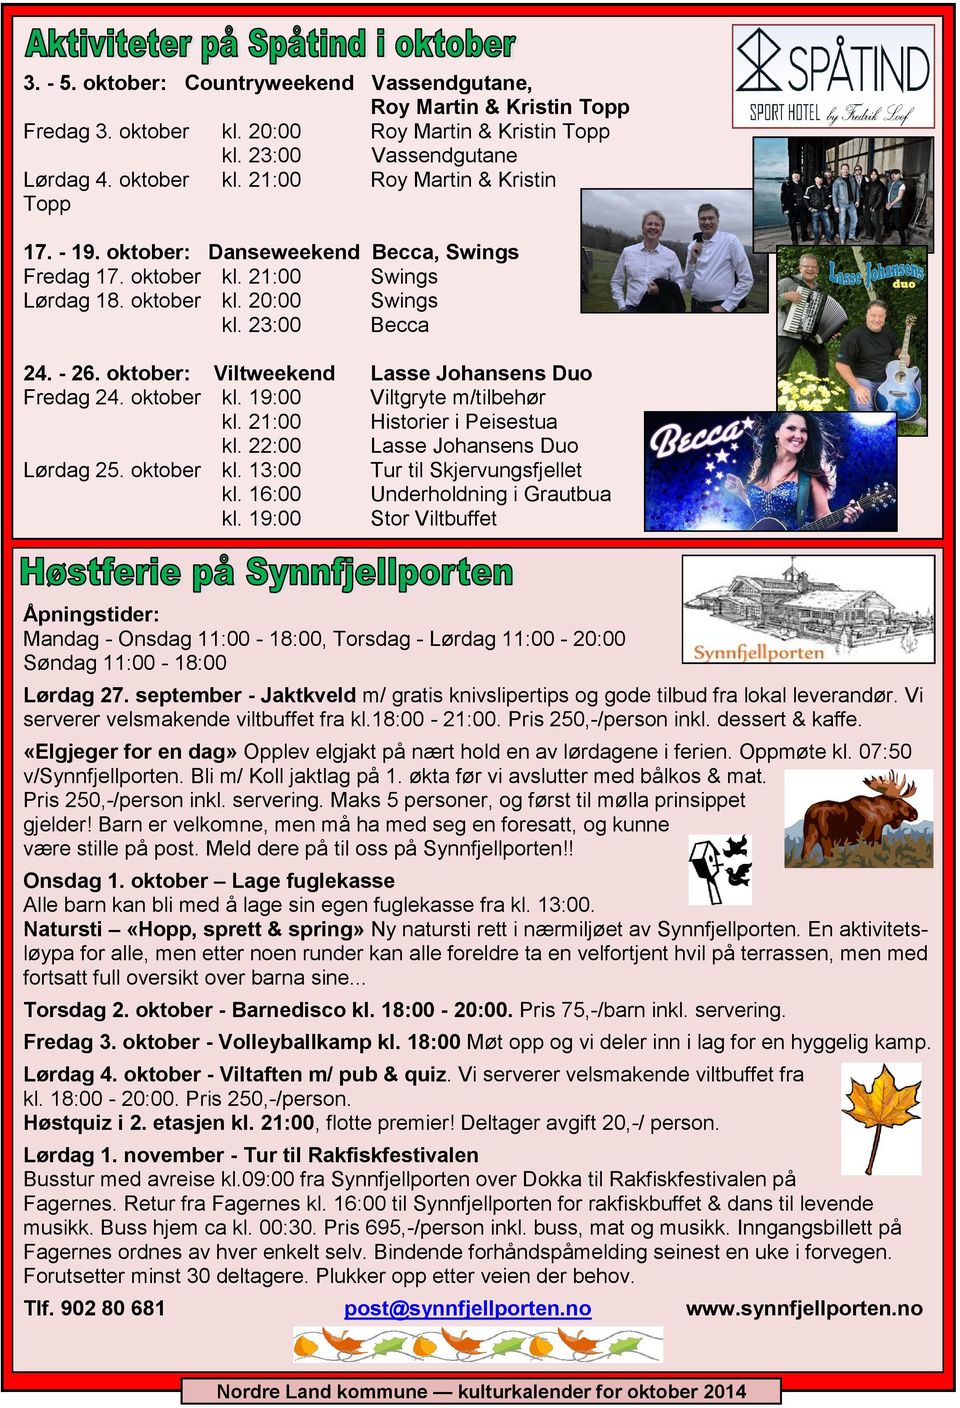 oktober kl. 19:00 Viltgryte m/tilbehør kl. 21:00 Historier i Peisestua kl. 22:00 Lasse Johansens Duo Lørdag 25. oktober kl. 13:00 Tur til Skjervungsfjellet kl. 16:00 Underholdning i Grautbua kl.